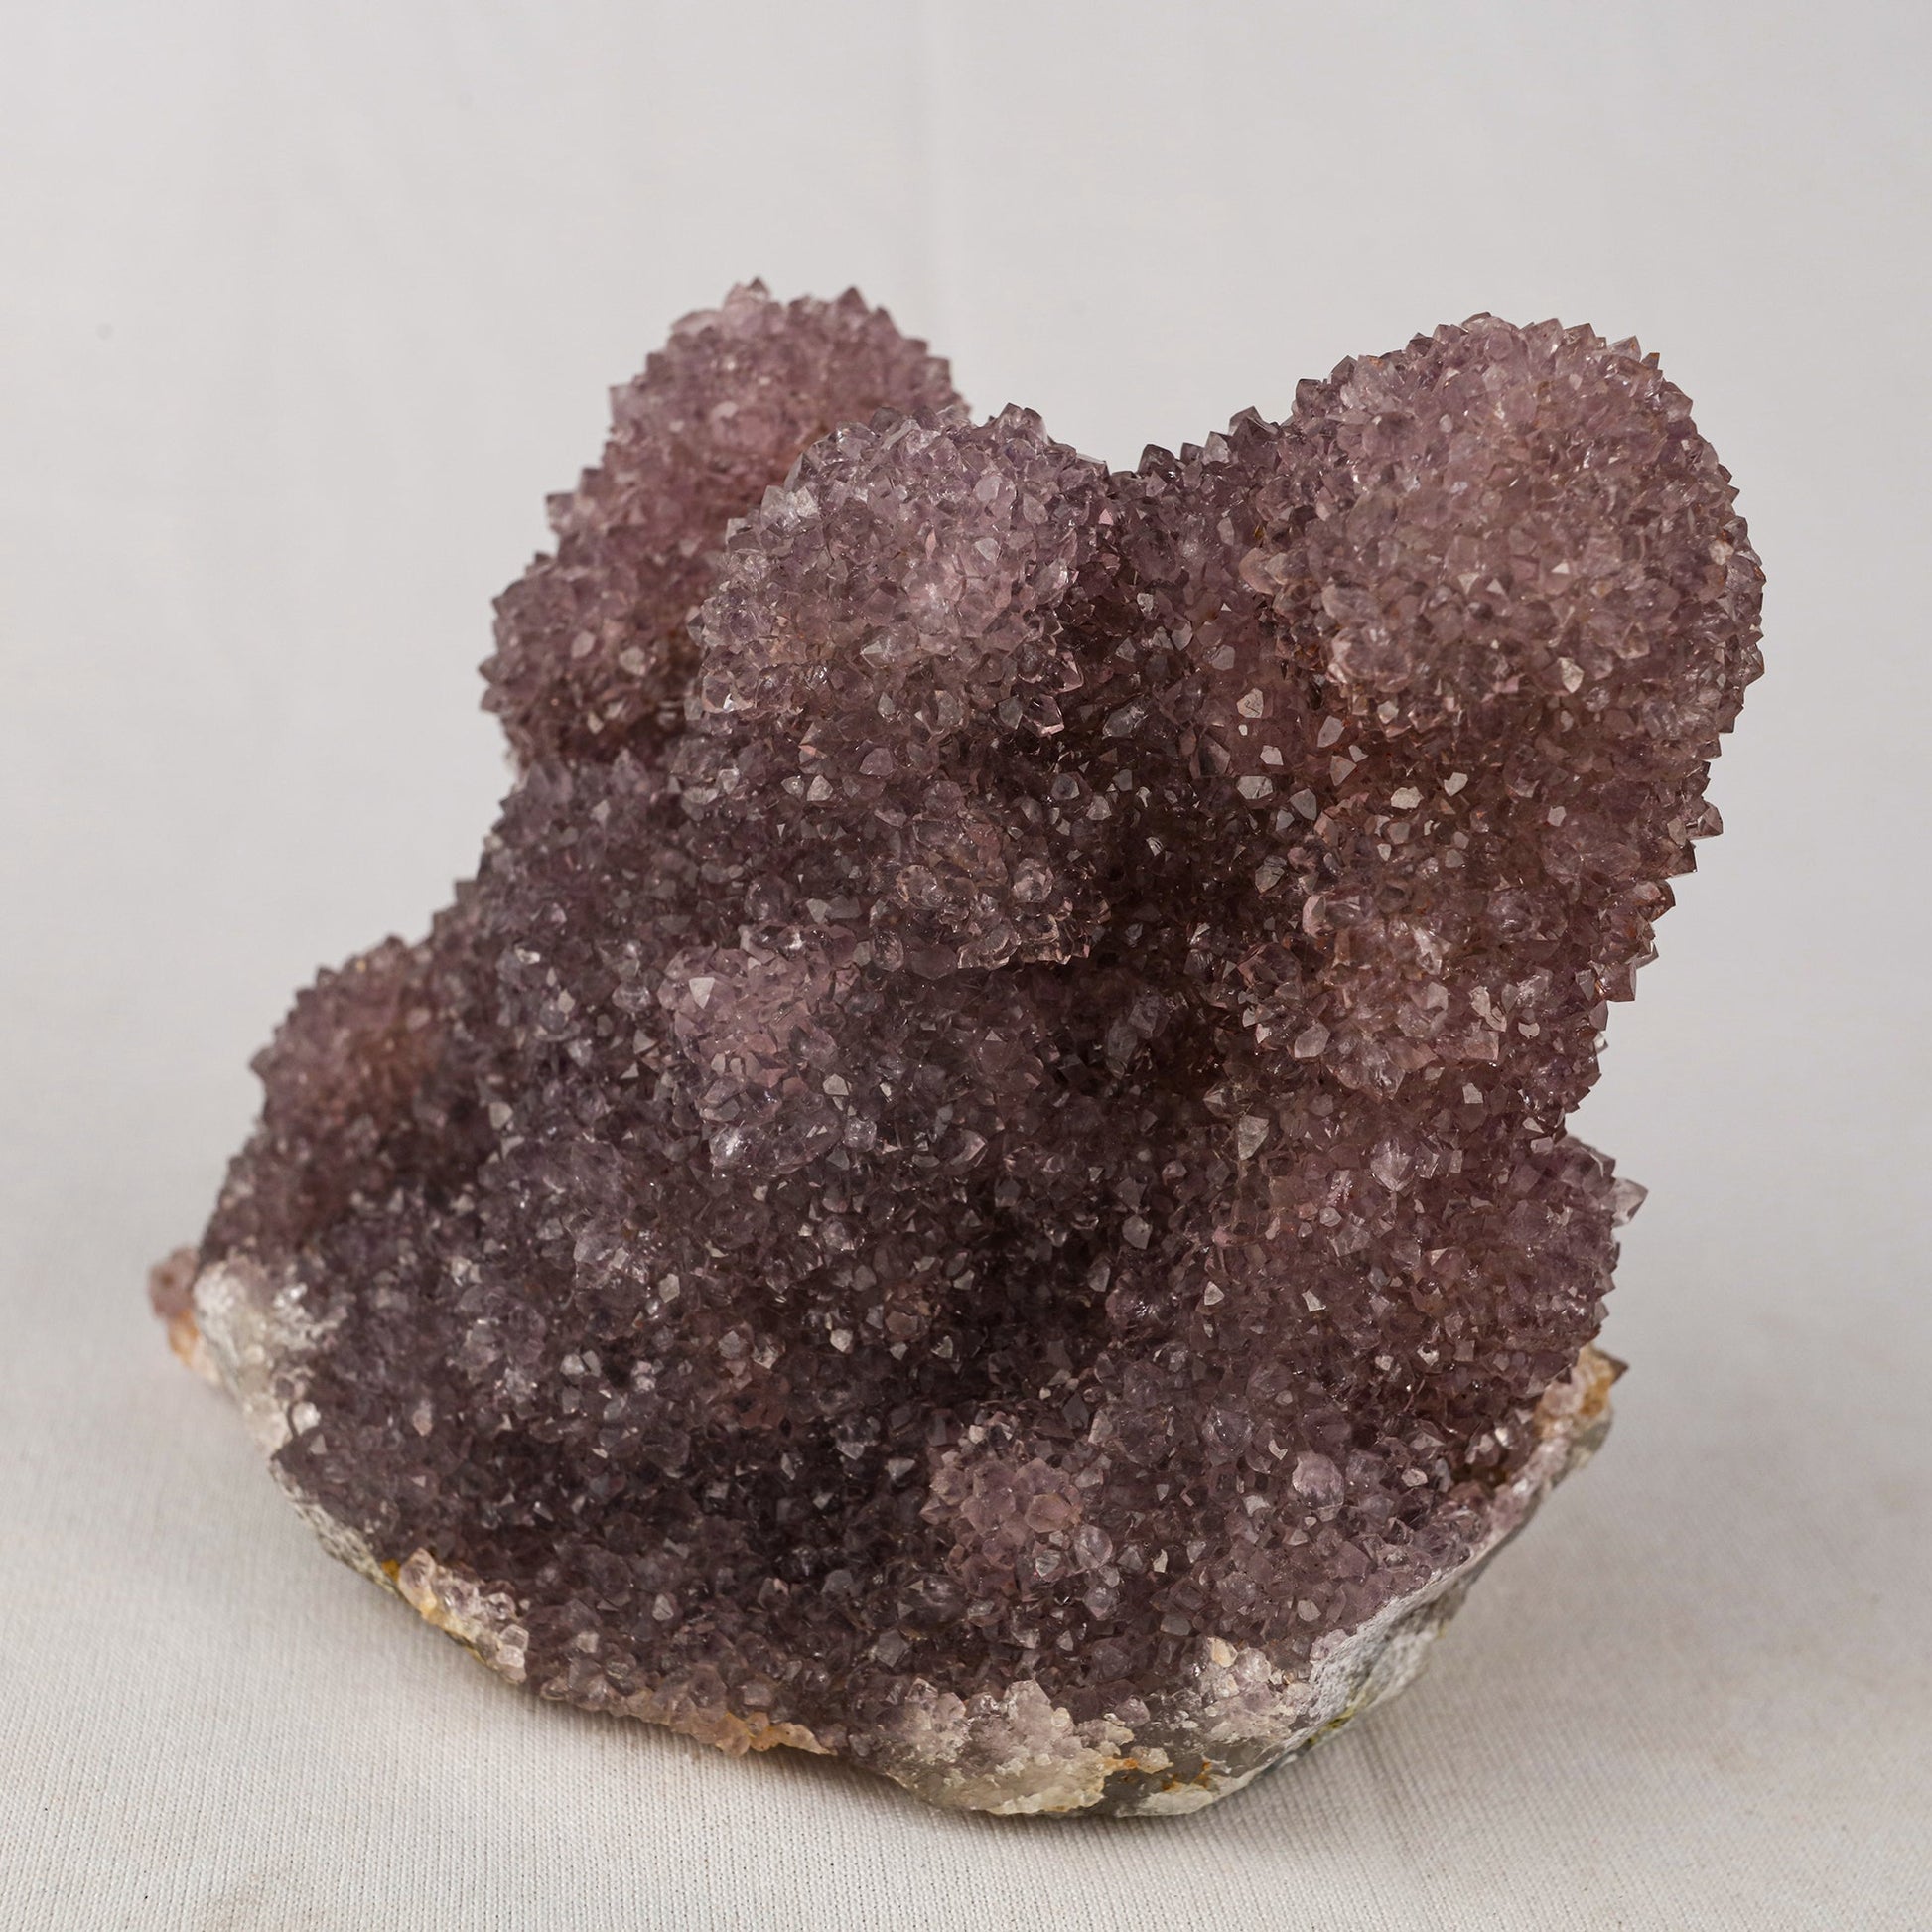 Amethyst Sprakling Crystals Natural Mineral Specimen # B 5519 Amethyst Superb Minerals 